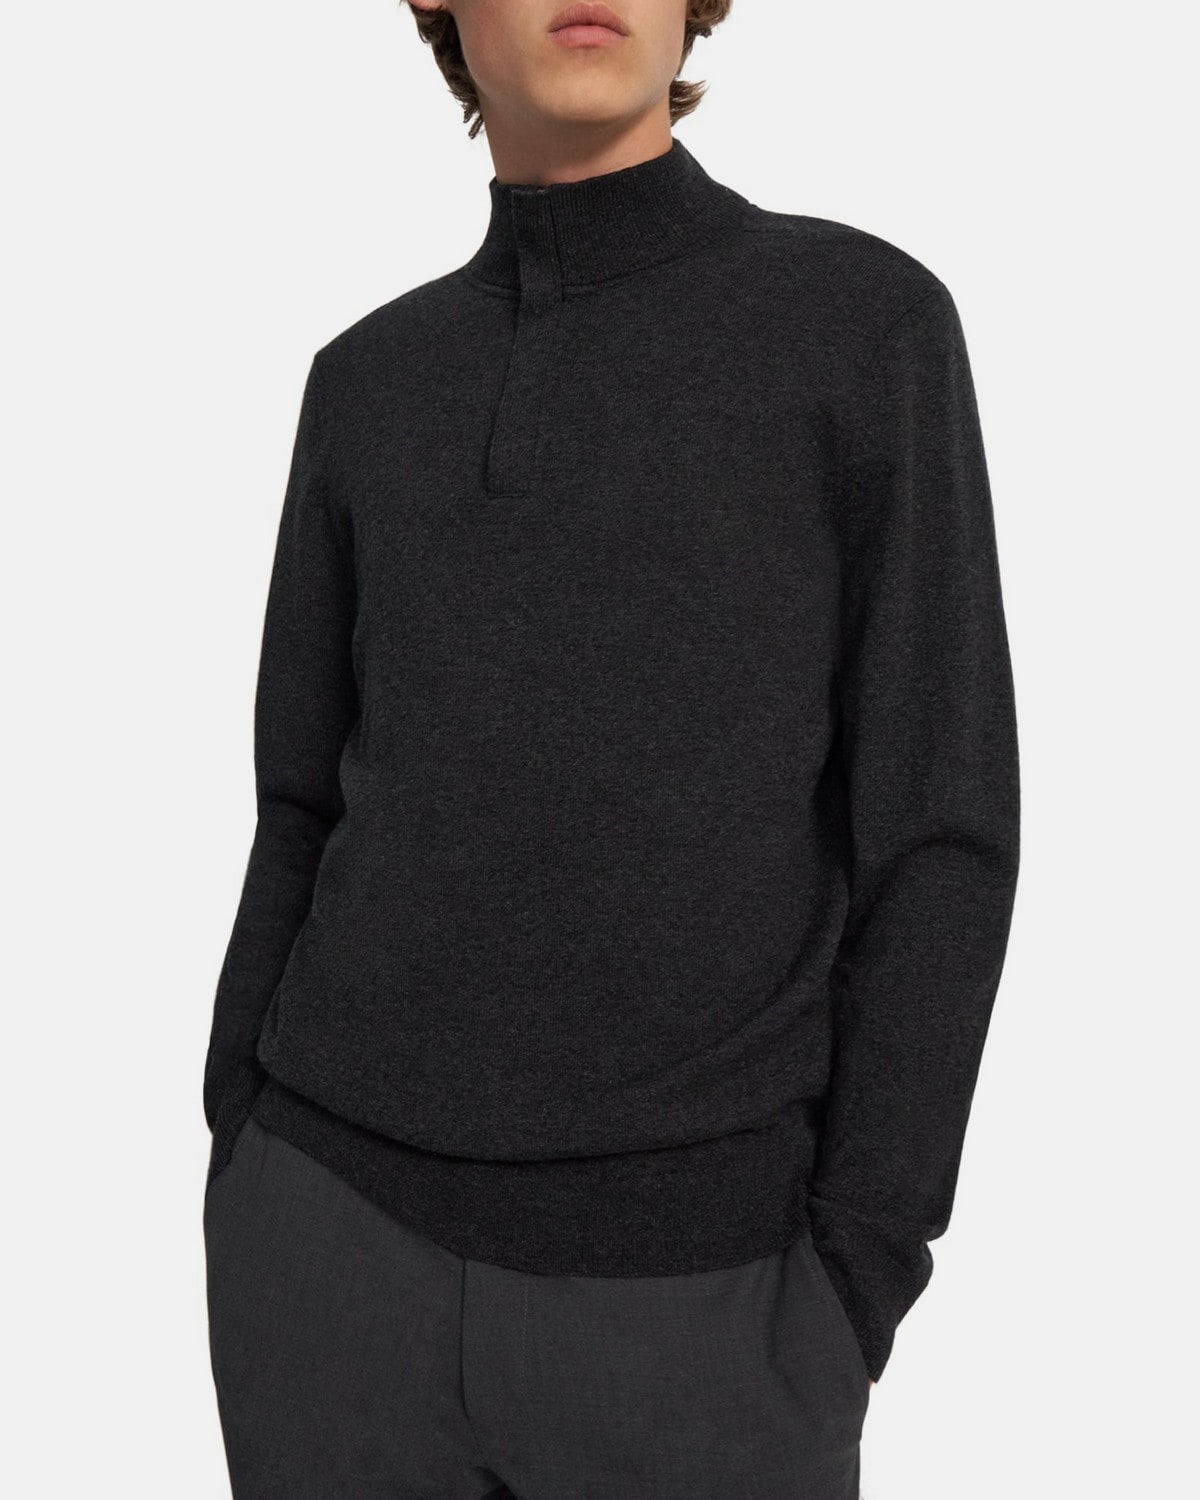 띠어리 맨 스웨터 Theory Quarter-Zip Sweater in Cashmere,PESTLE MELANGE